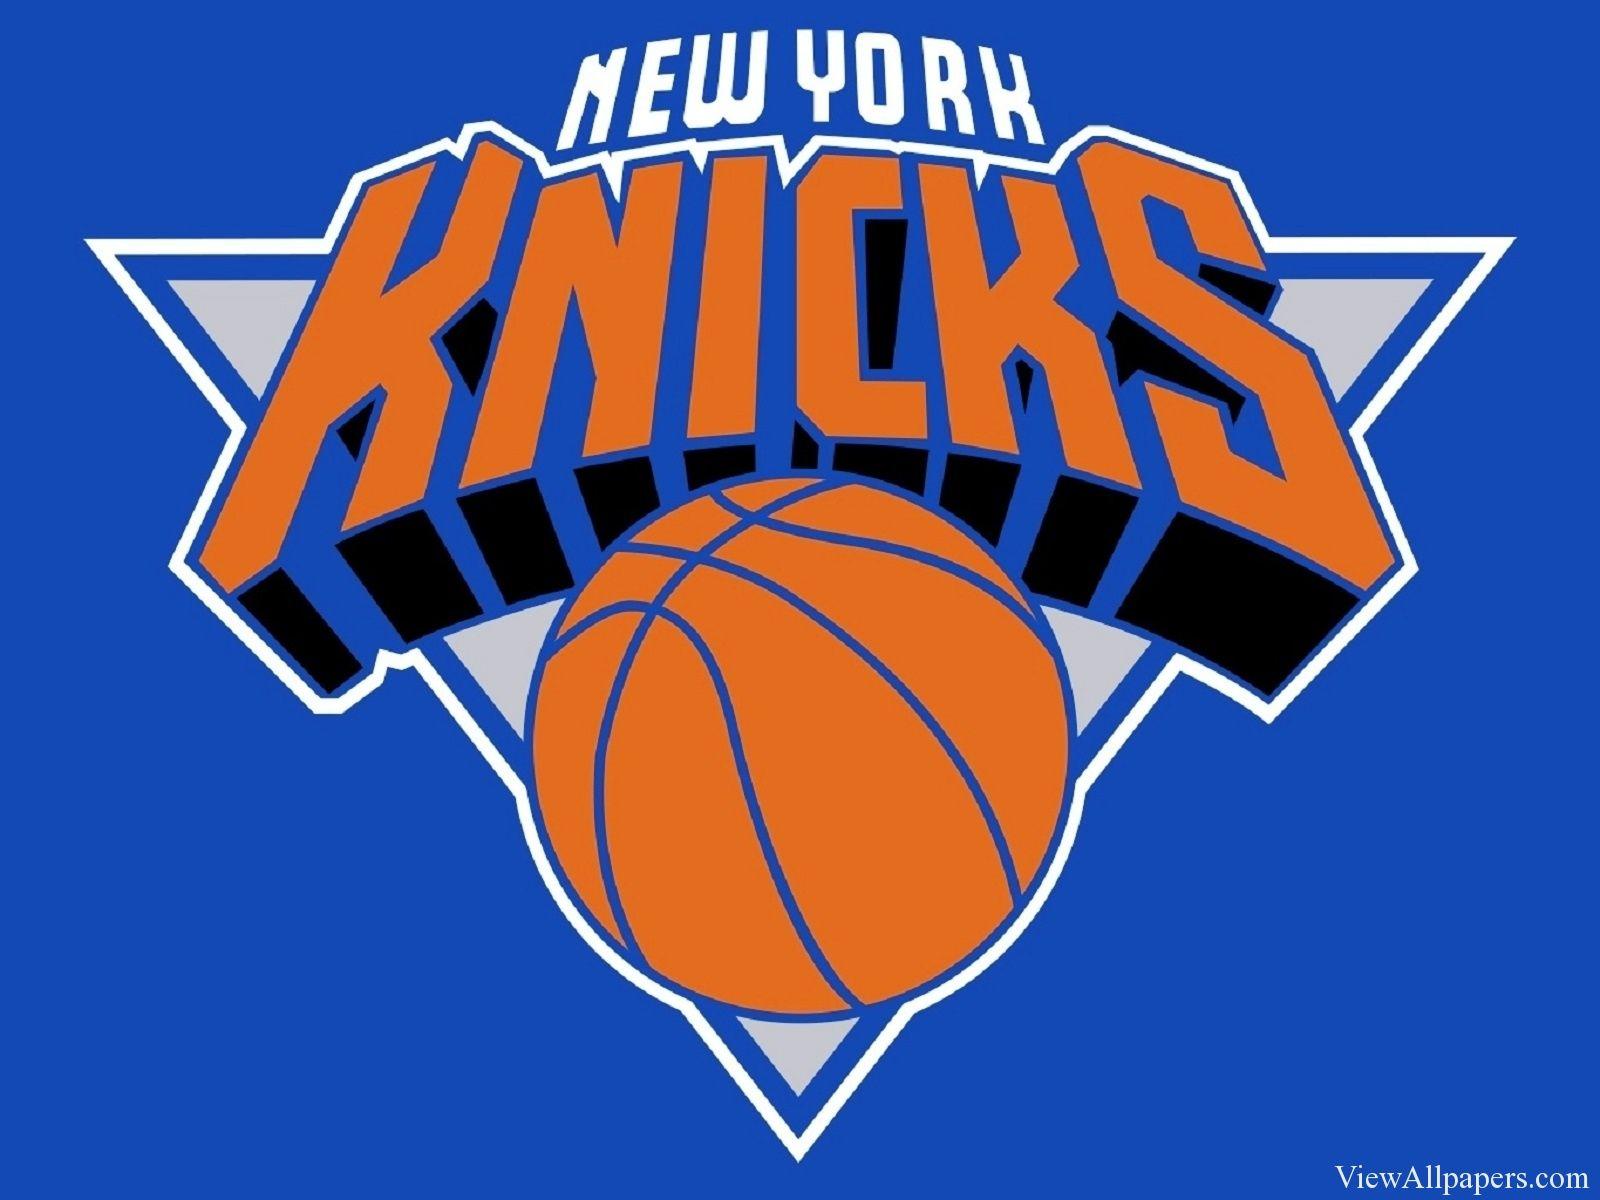 New York Knicks Logo - New York Knicks Logo | classic Knicks logo | New York Knicks, NBA ...